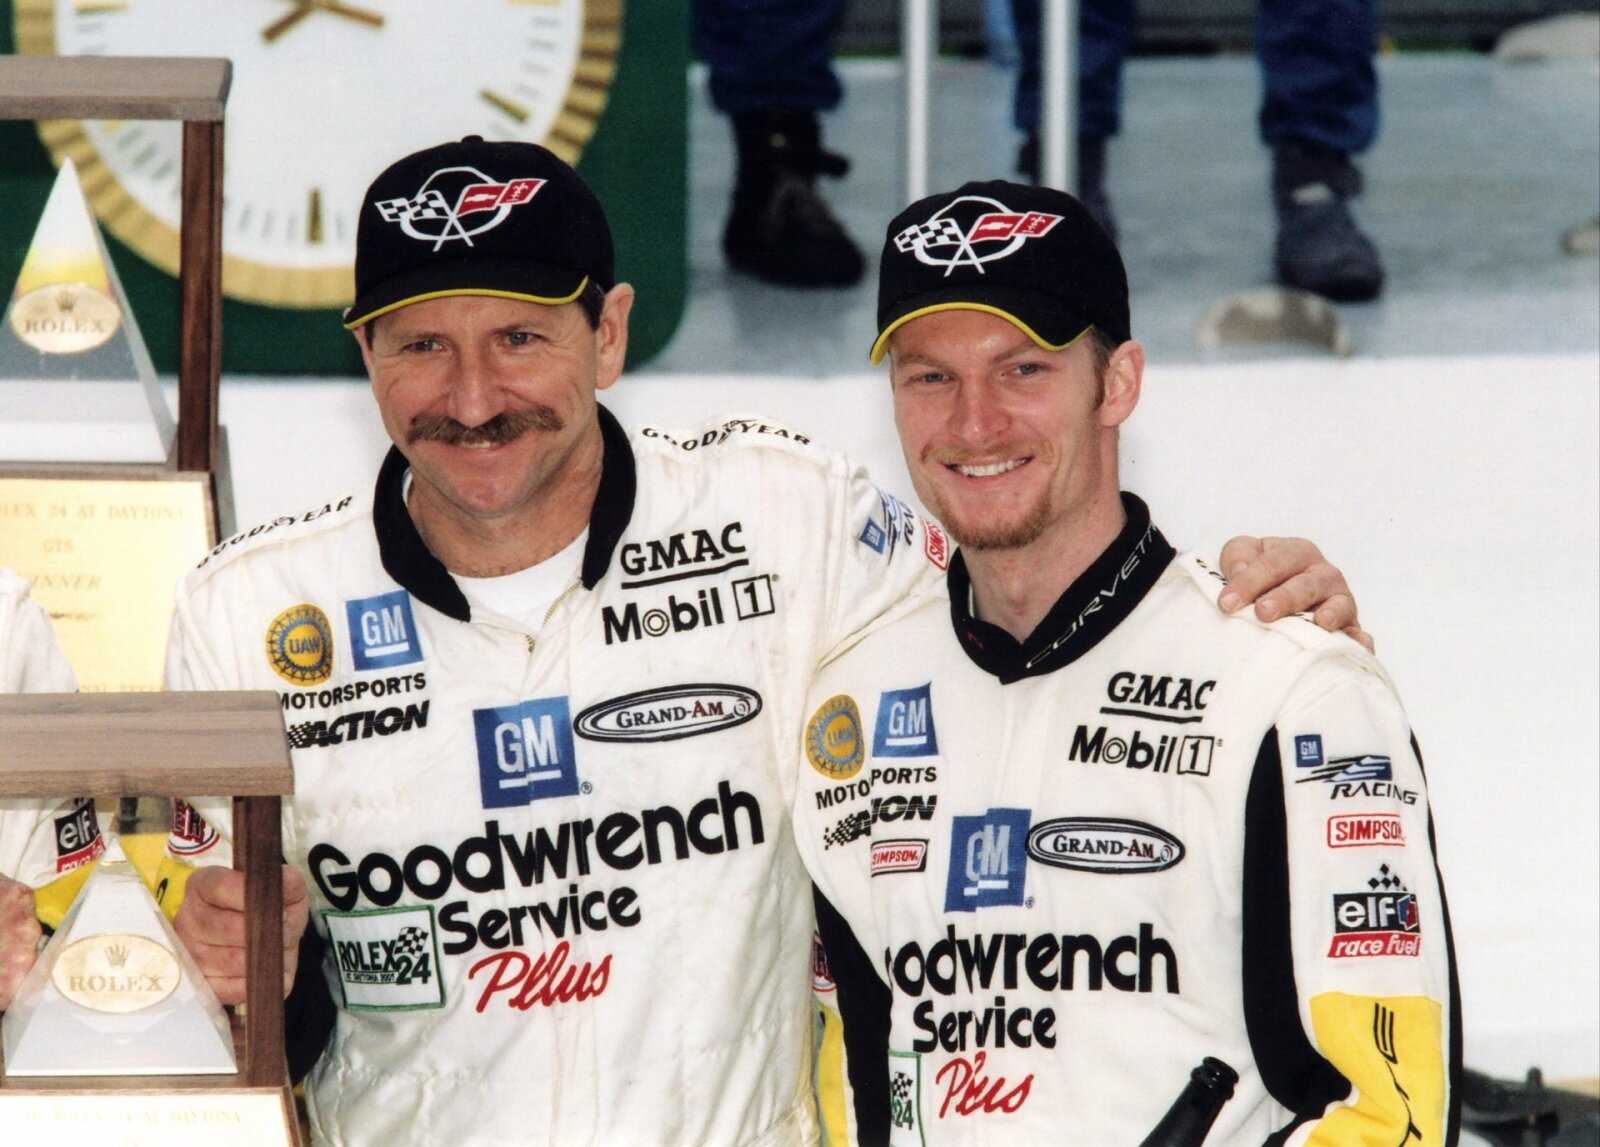 Dale Earnhardt et Dale Earnhardt Jr.avant la course à Daytona